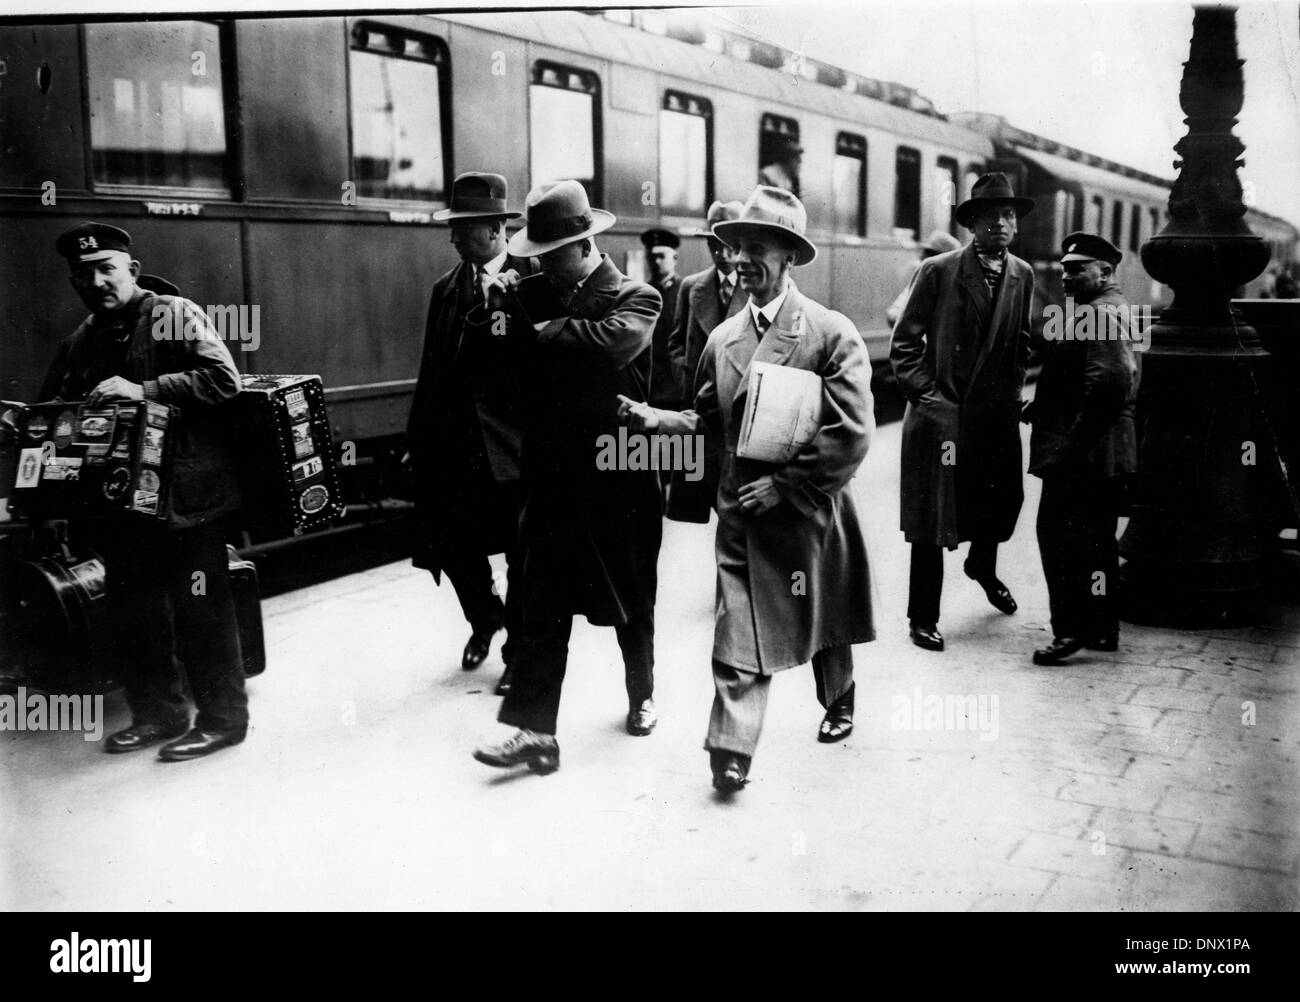 1 avril, 1931 - Munich, Allemagne - JOSEPH GOEBBELS (Octobre 29, 1897 - 1 mai 1945) a été chancelier de l'Allemagne et ministre de la propagande du Reich dans l'Allemagne nazie de 1933 à 1945. (Crédit Image : © Keystone Photos USA/ZUMAPRESS.com) Banque D'Images